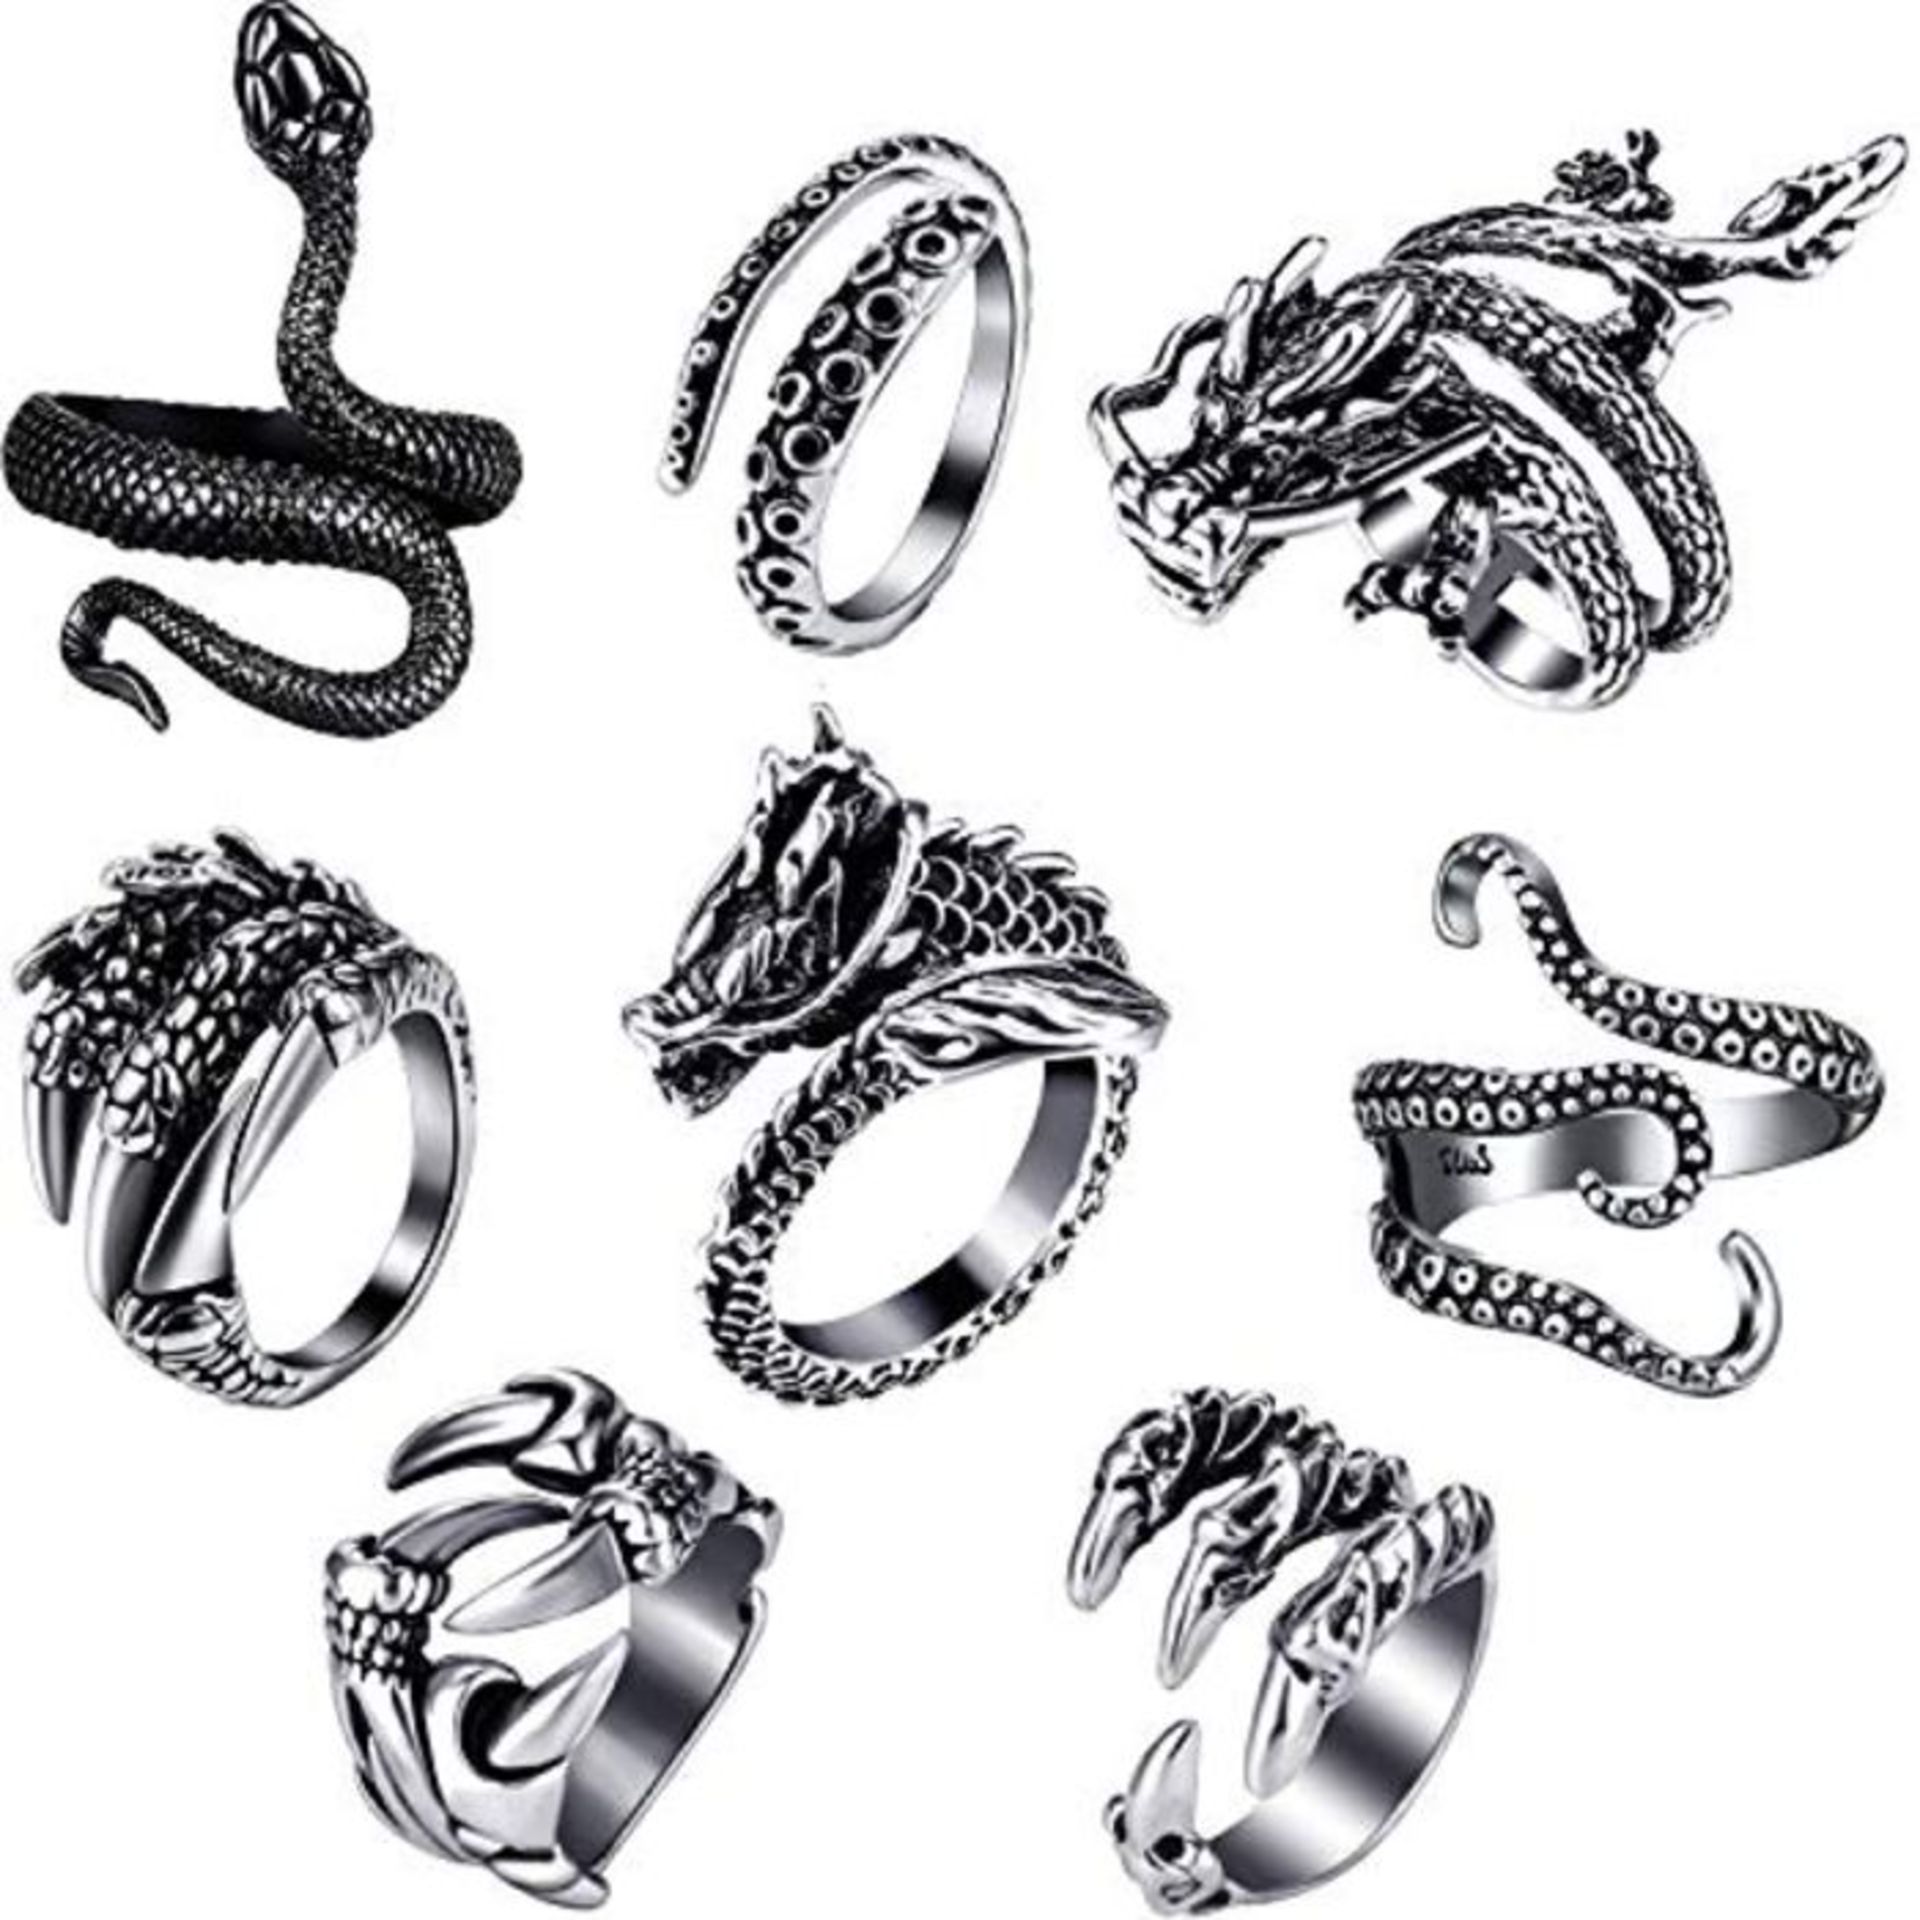 HICARER 8 Stück Vintage Punk Ringe Tintenfisch Drachen Schlange Verstellbarer Ring